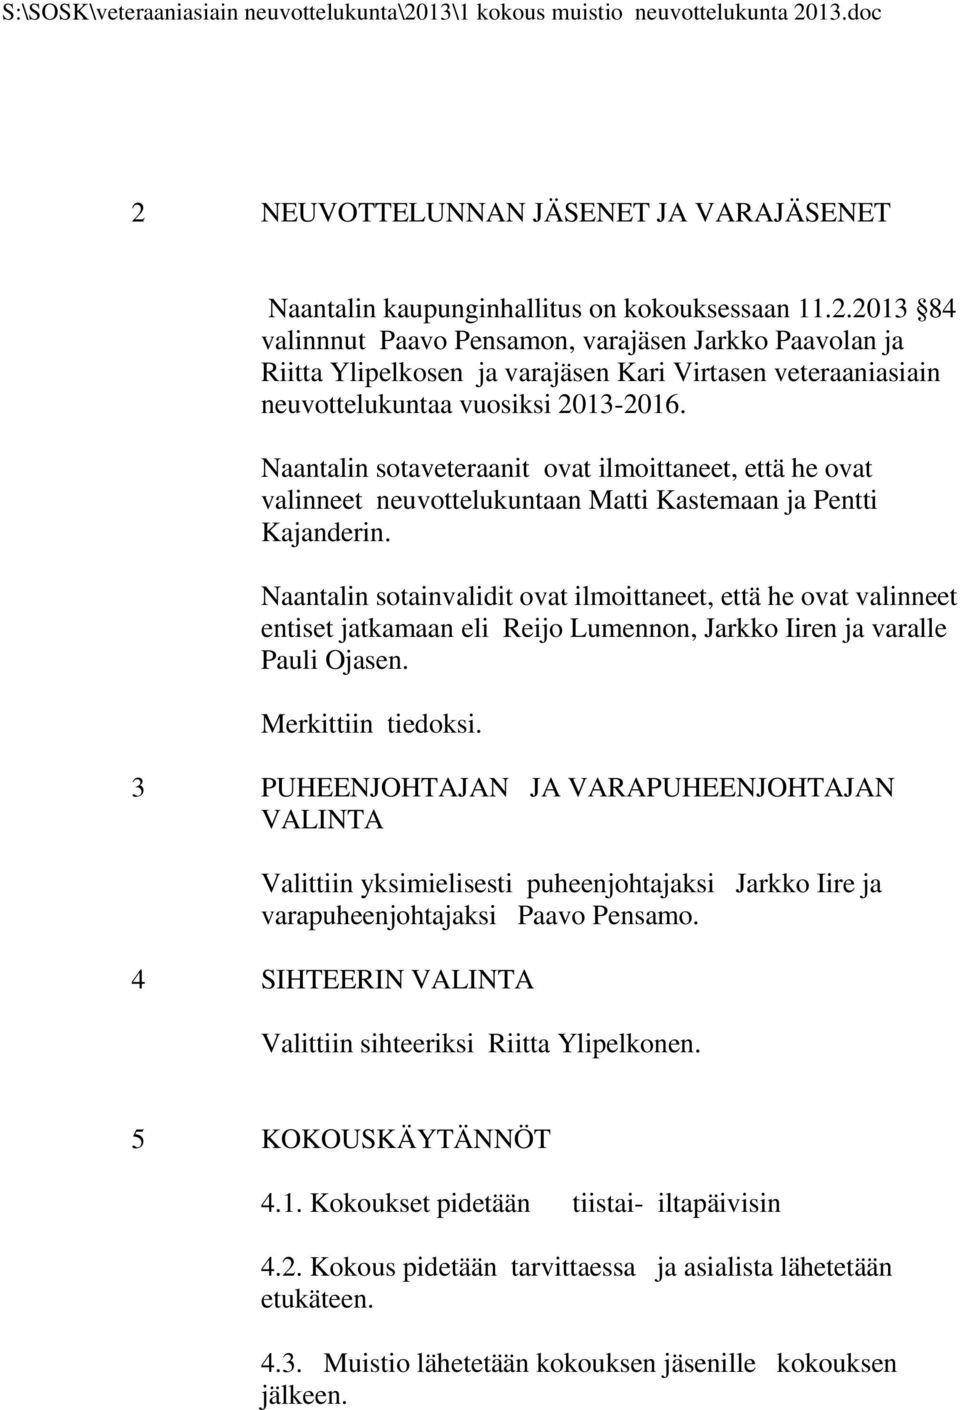 Naantalin sotainvalidit ovat ilmoittaneet, että he ovat valinneet entiset jatkamaan eli Reijo Lumennon, Jarkko Iiren ja varalle Pauli Ojasen. Merkittiin tiedoksi.